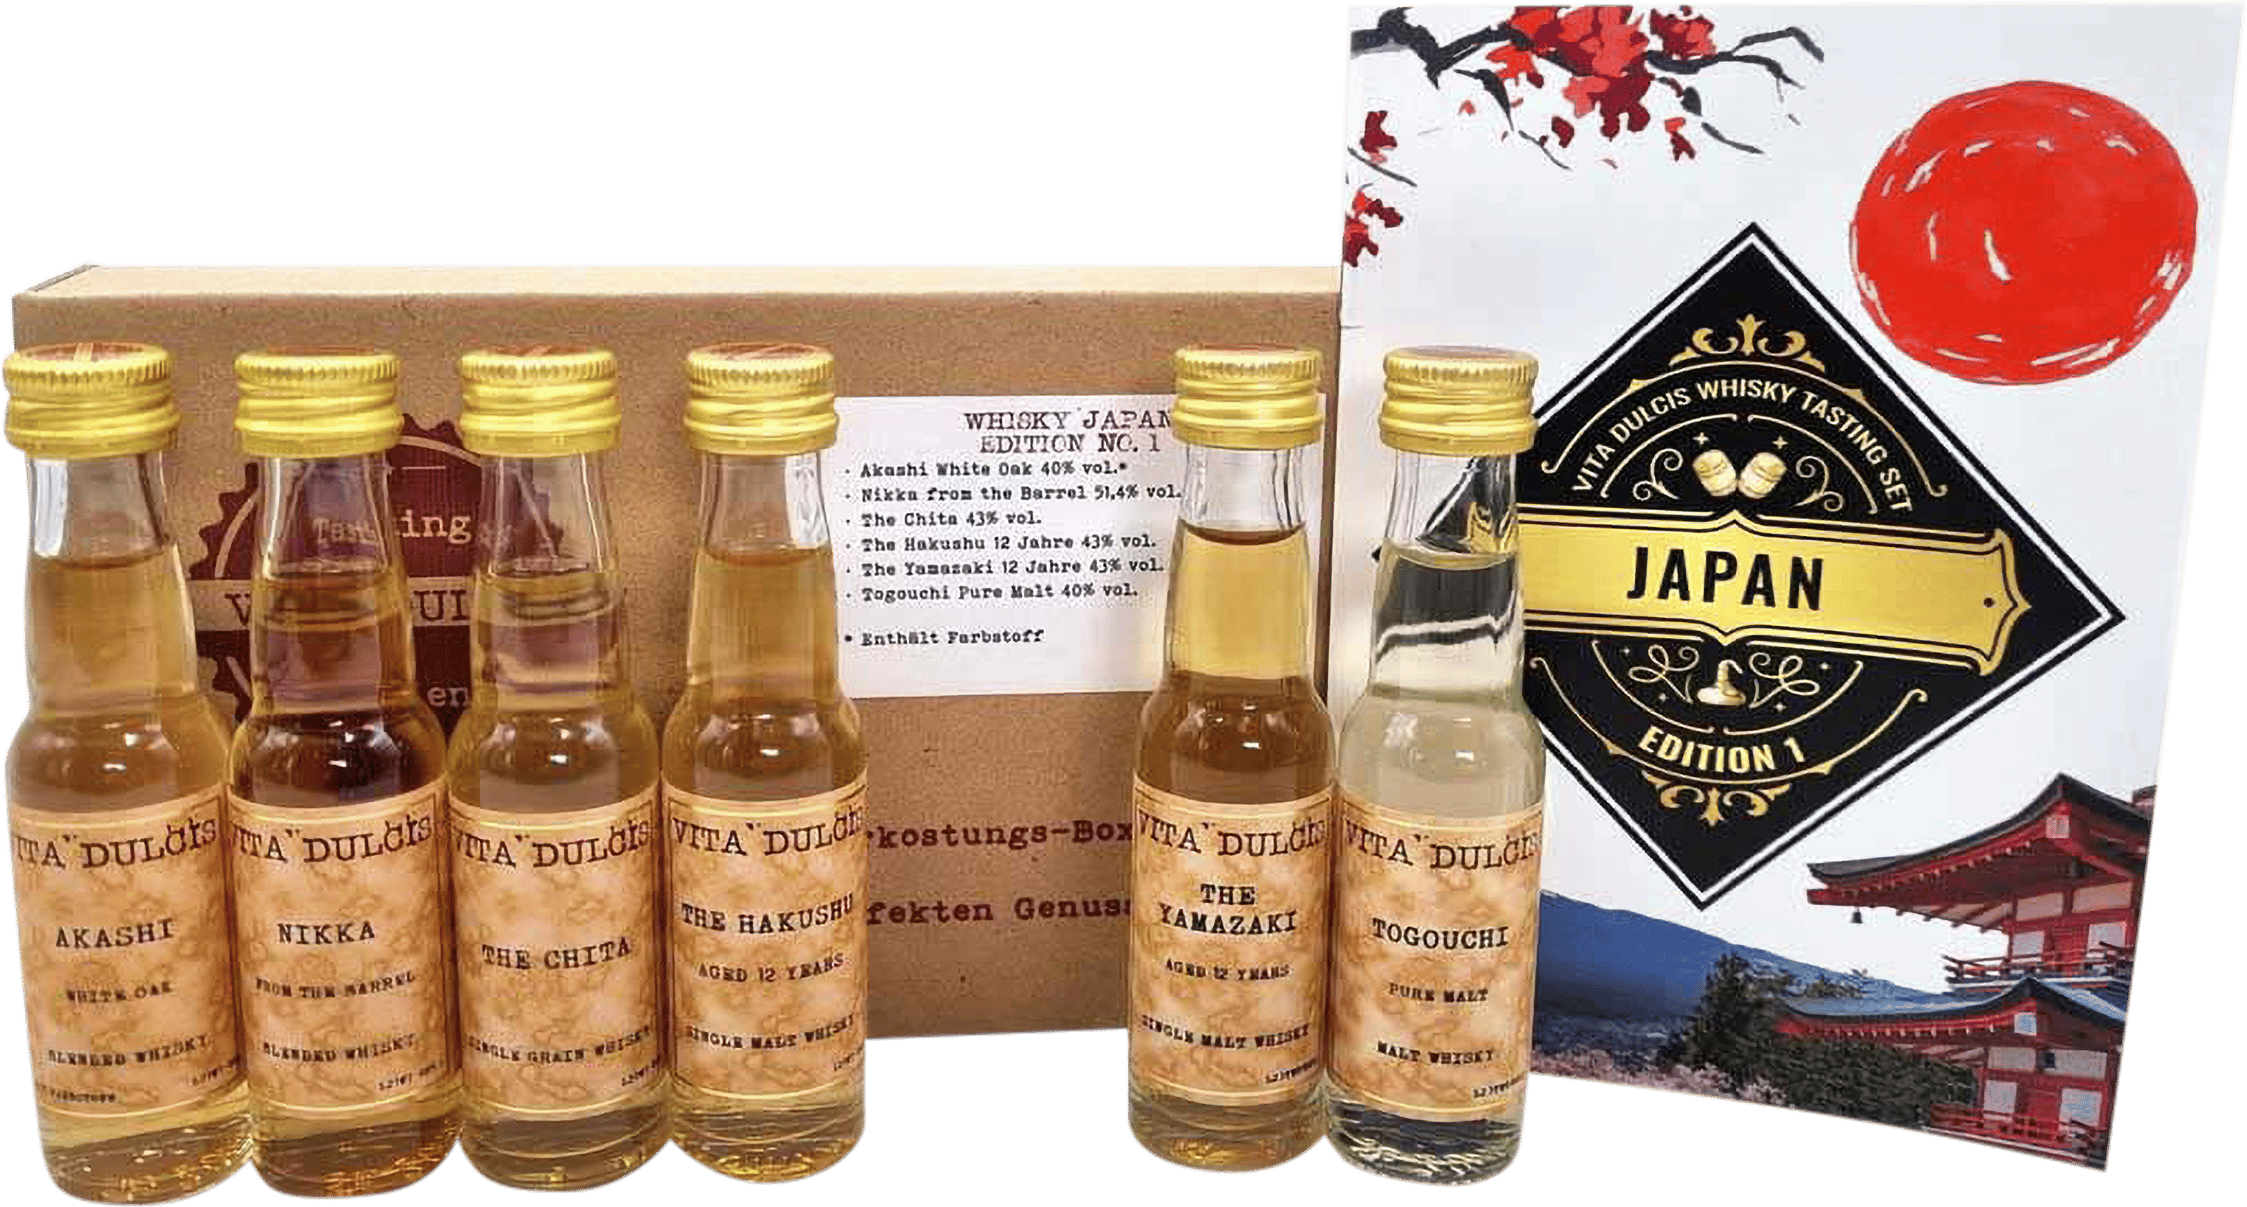 Whisky Tasting & Honest kaufen Japan Rare Box 